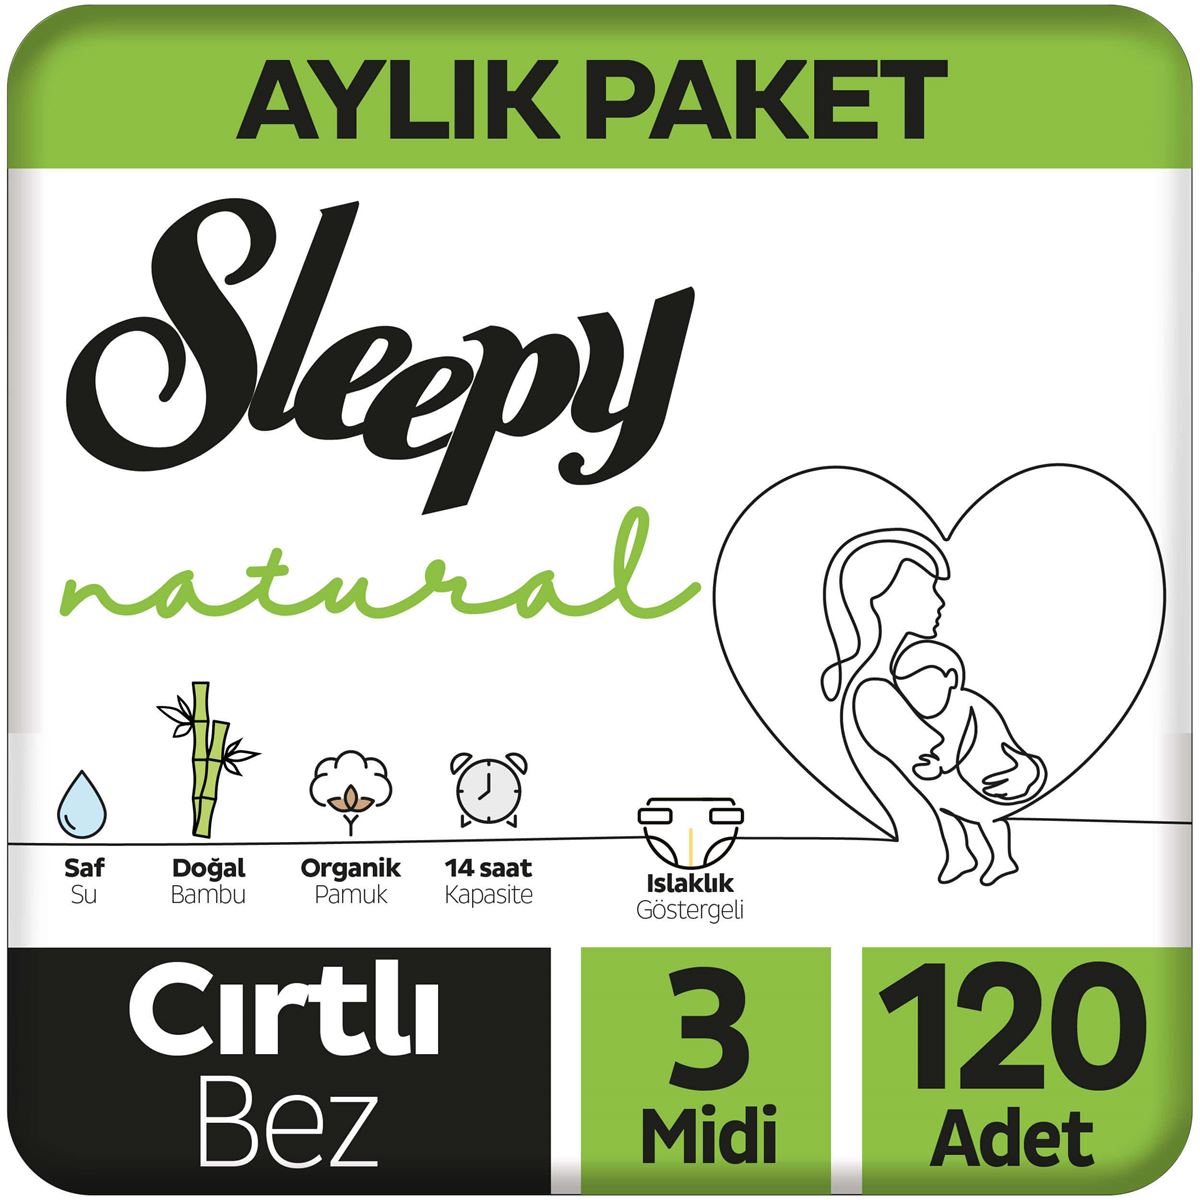 Sleepy Natural Aylık Paket Bebek Bezi 3 Numara Midi 120 Adet